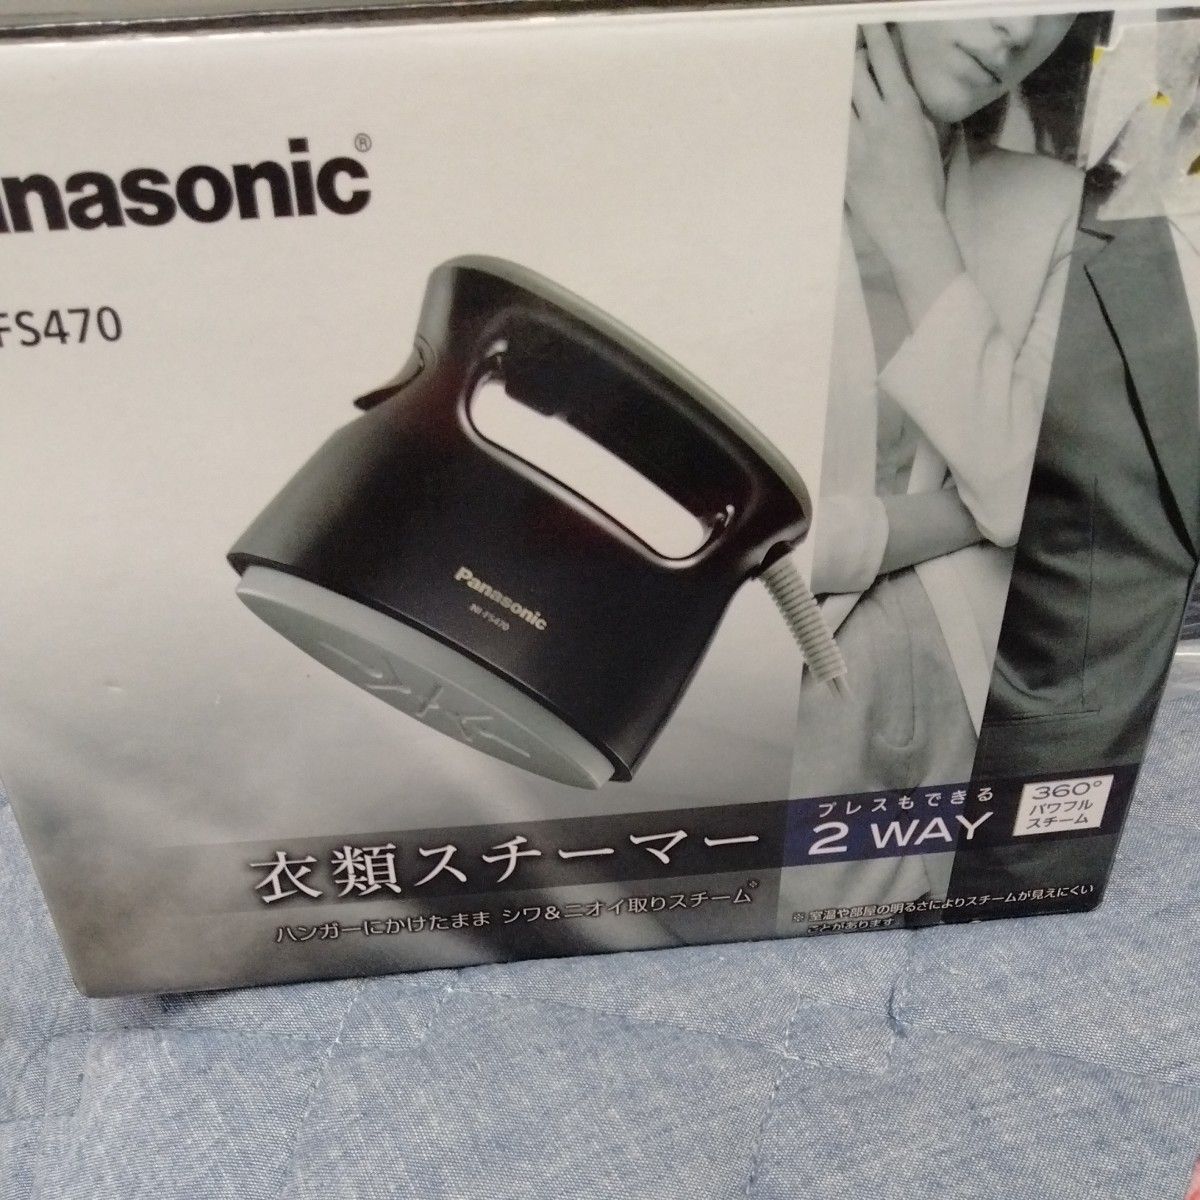 衣類スチーマー NI-FS470-K （ブラック） Panasonic 衣類スチーマー